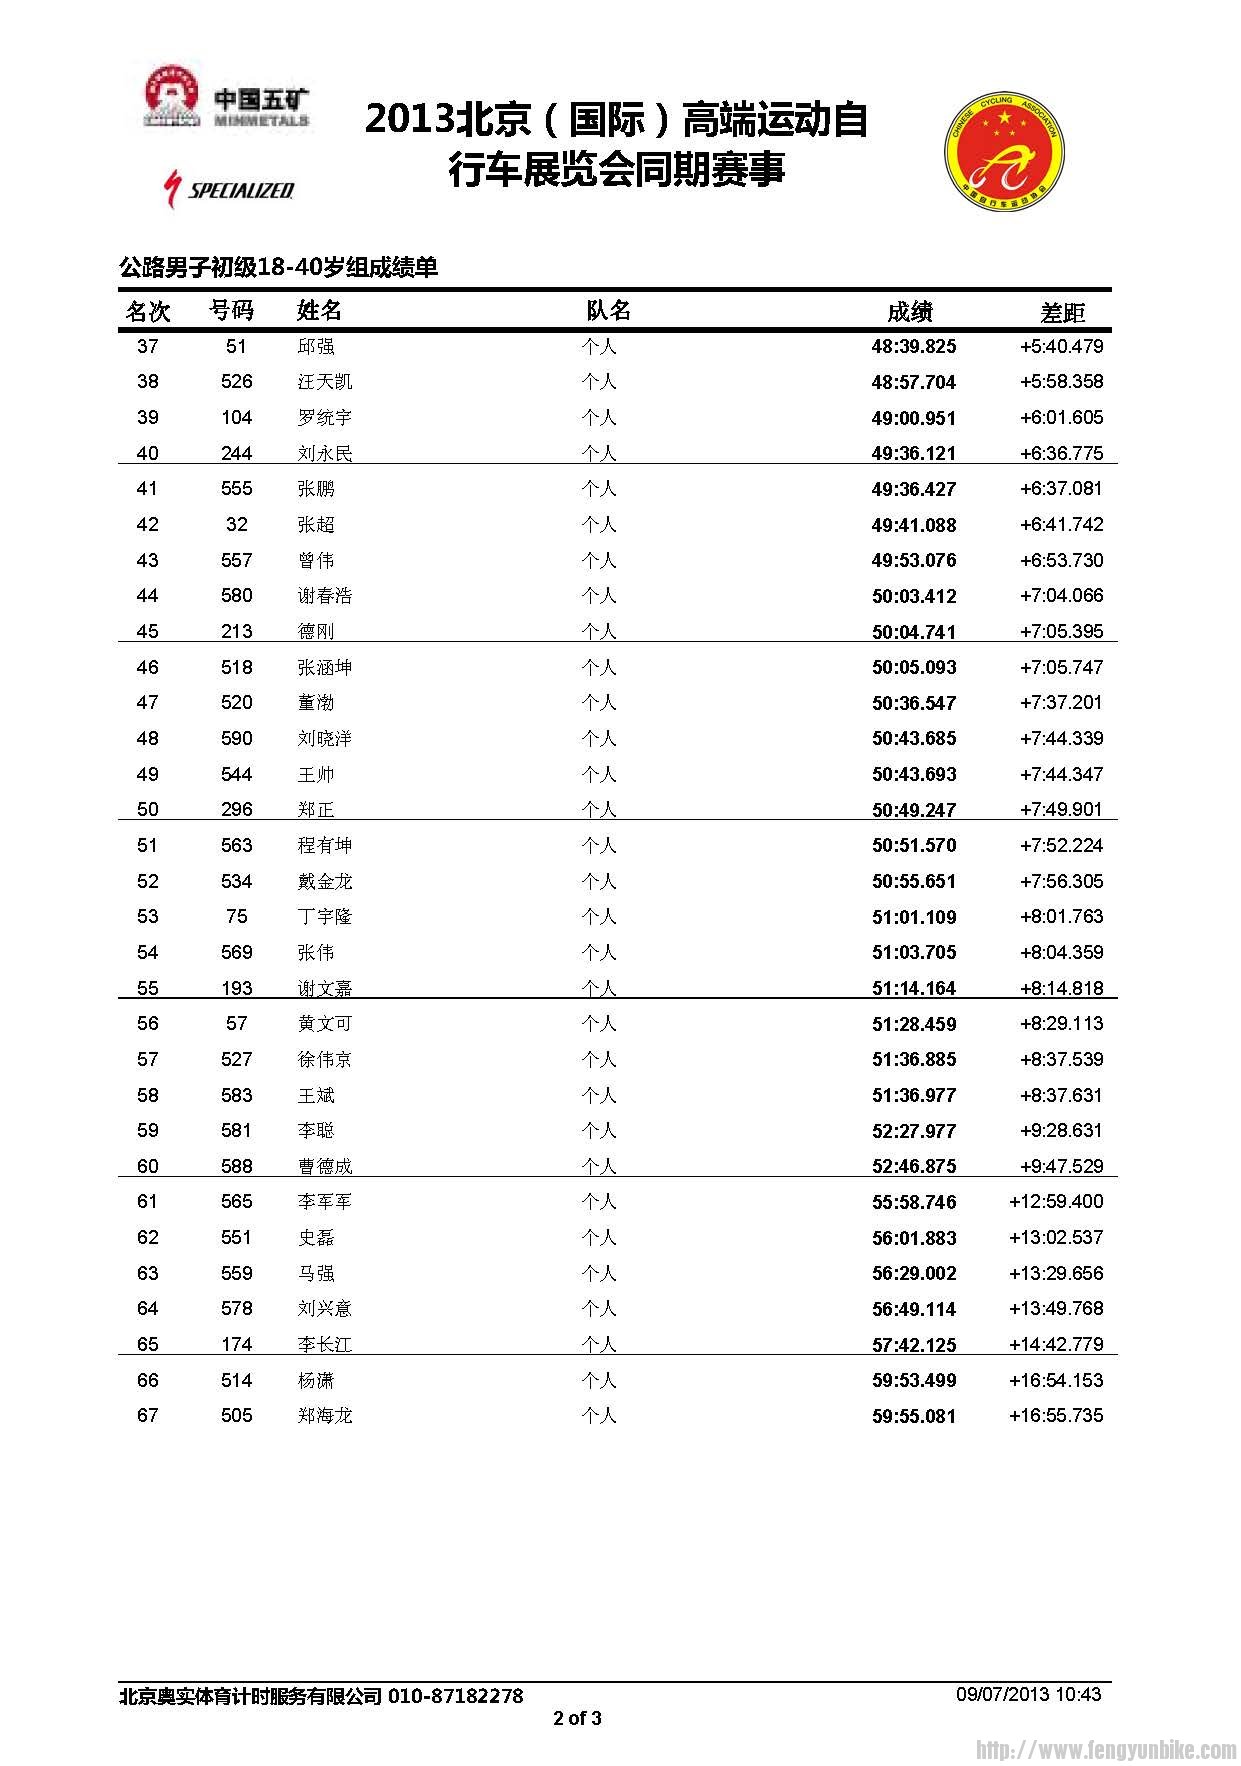 公路男子初级18-40岁组成绩公告_页面_2.jpg